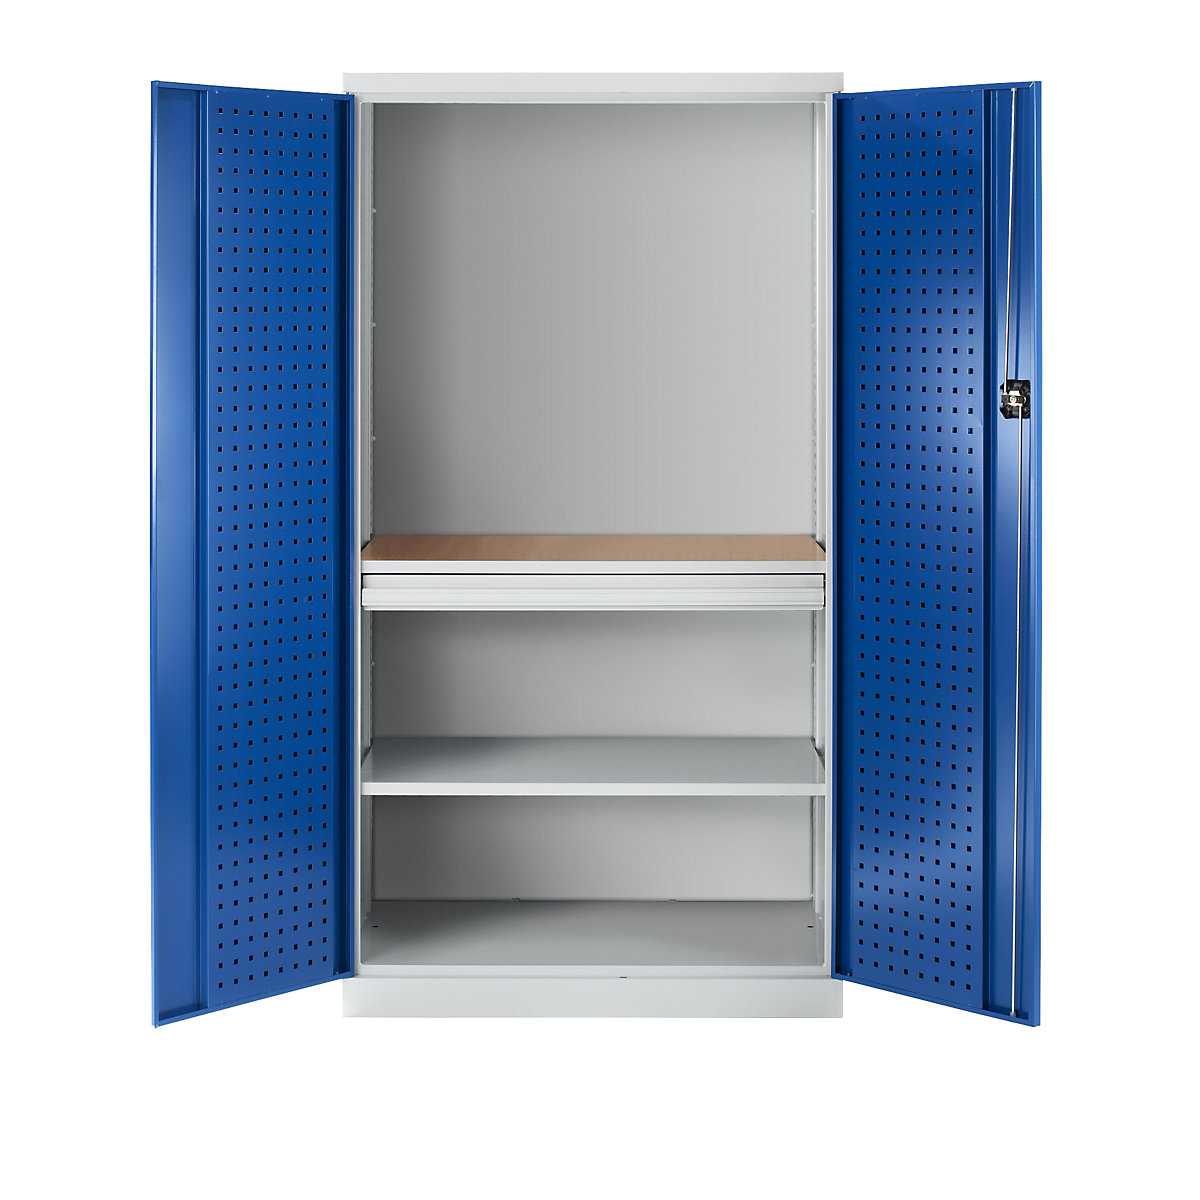 Werkzeugschrank mit Lochprägung, 1 Schublade, 1 Fachboden, 1 Arbeitsplatte – Rückwand geschlossen, Türen enzianblau-4